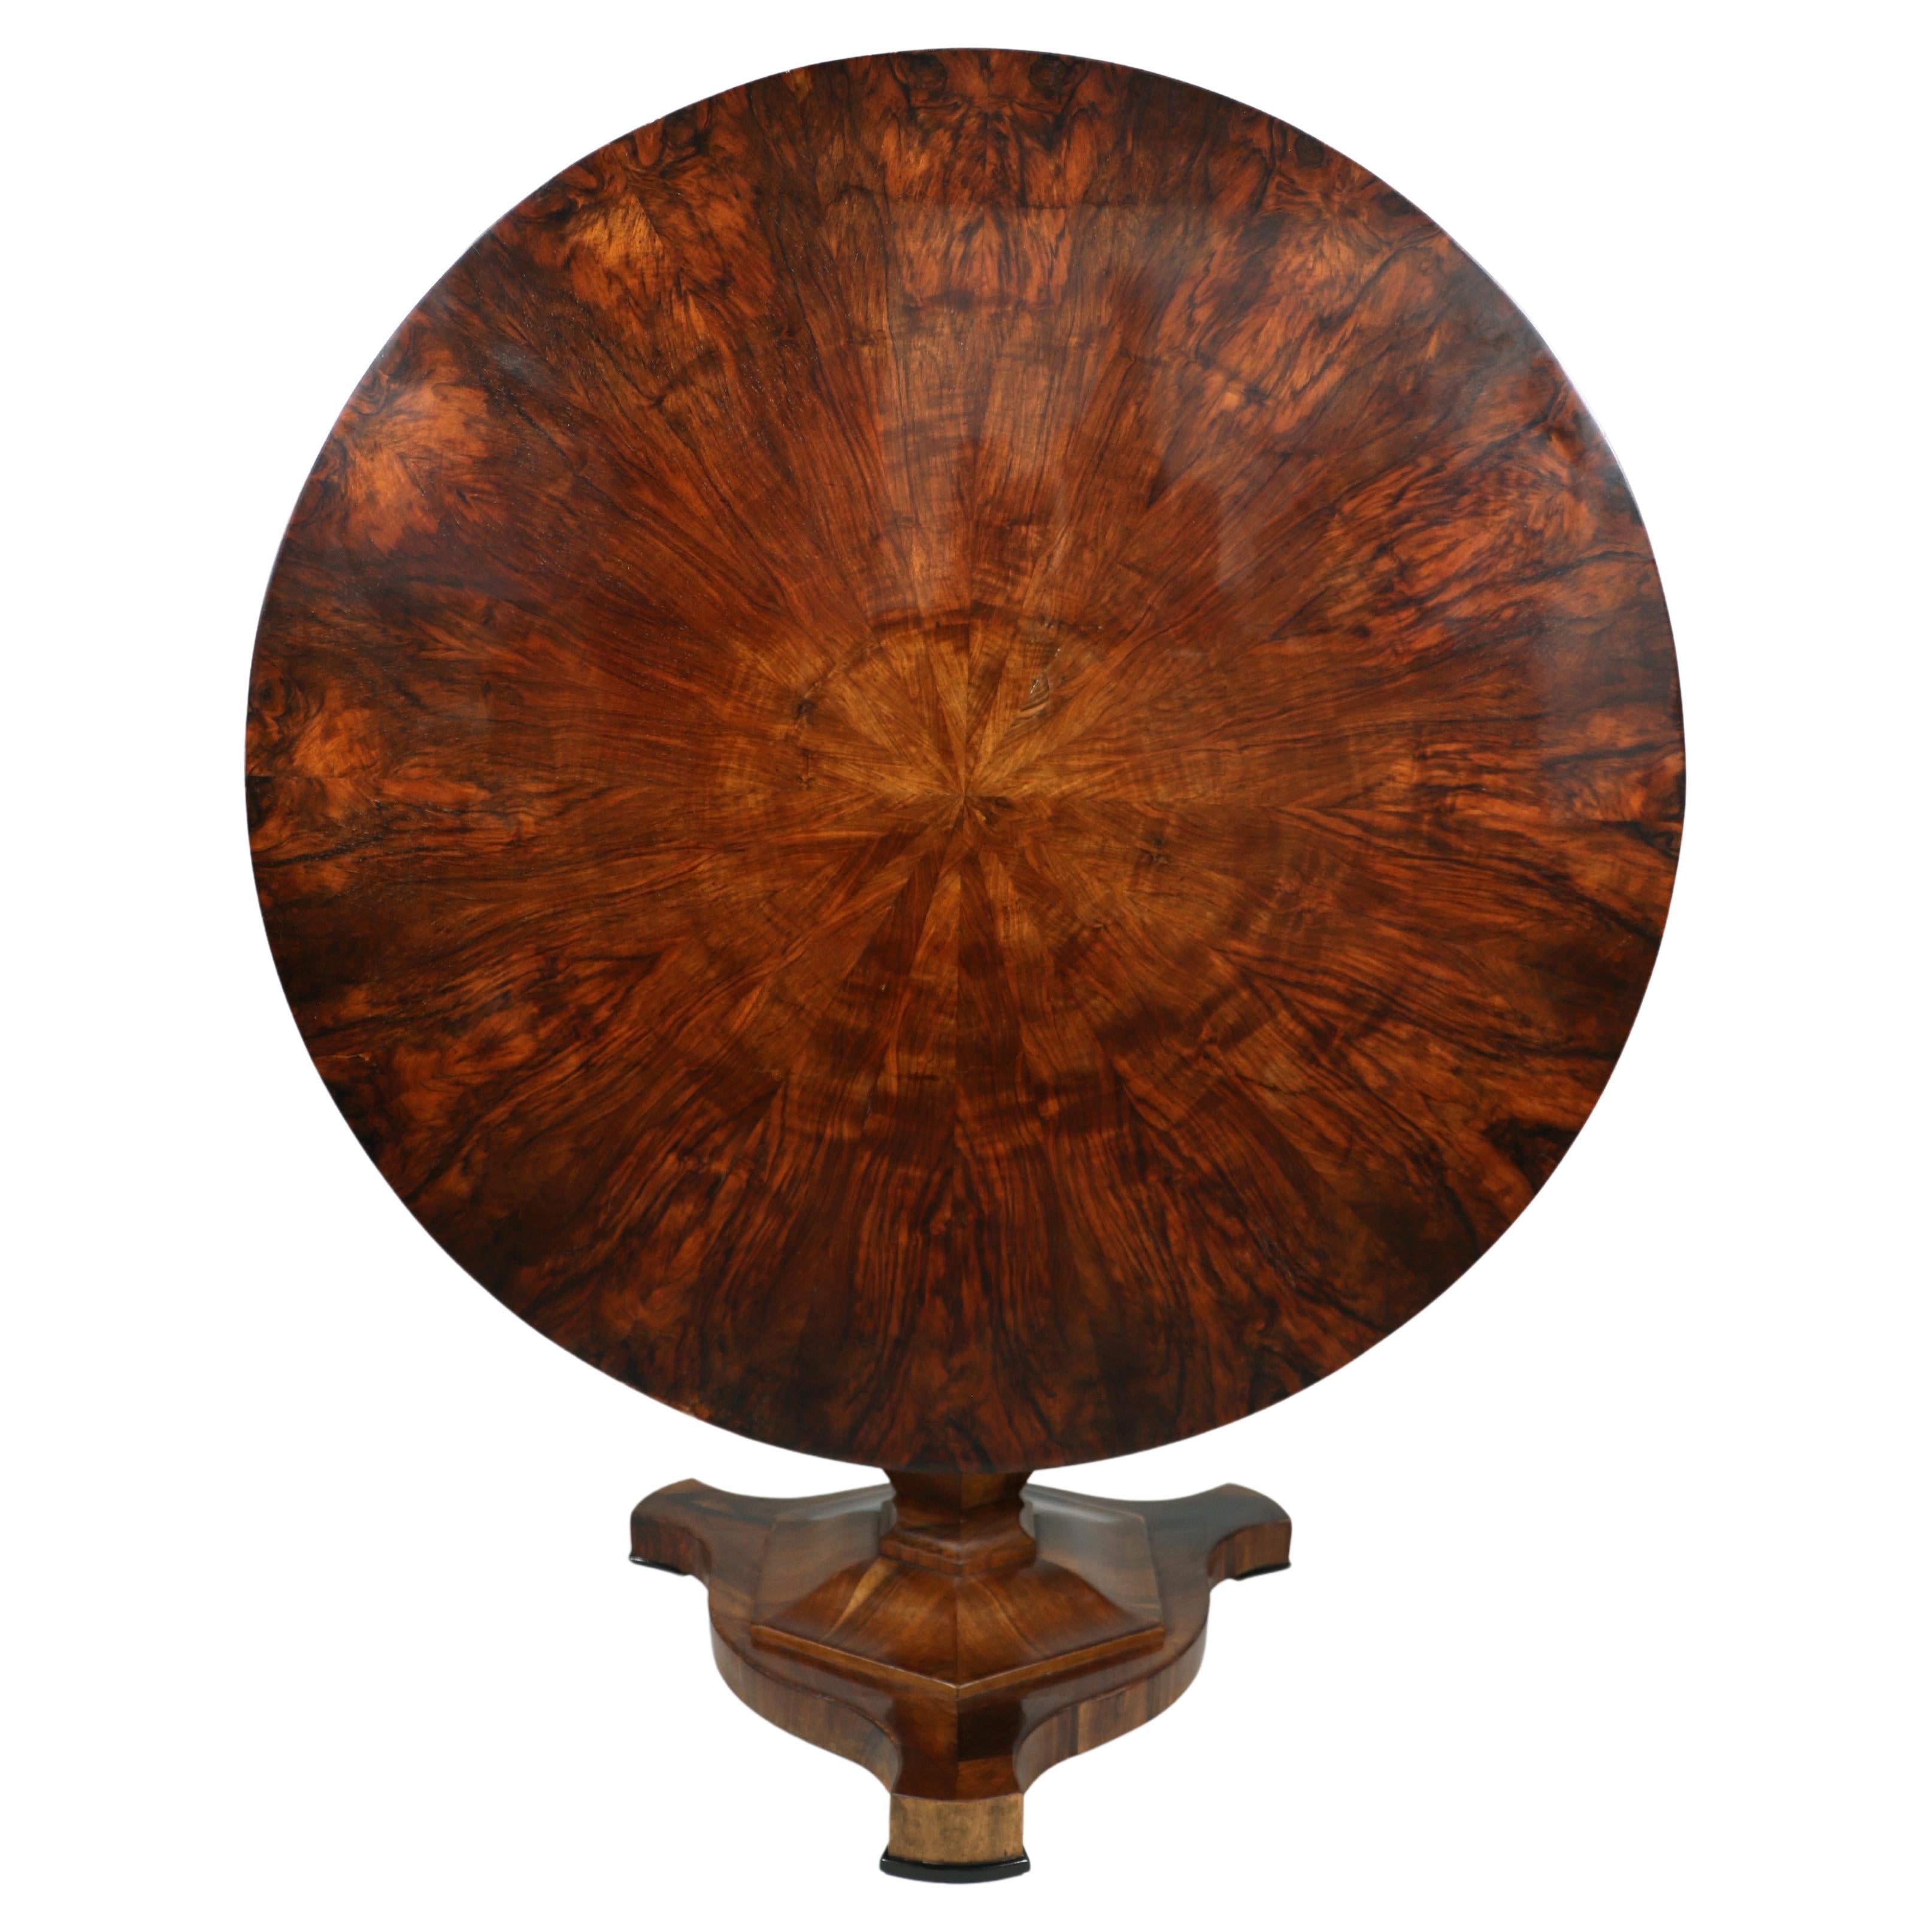 Hallo,
Dieser schöne und sehr große Biedermeier-Tisch aus Nussbaumholz wurde um 1825 in Wien hergestellt.

Die Stücke des Wiener Biedermeier zeichnen sich durch ihre raffinierten Proportionen, ihr seltenes und raffiniertes Design und ihre exzellente